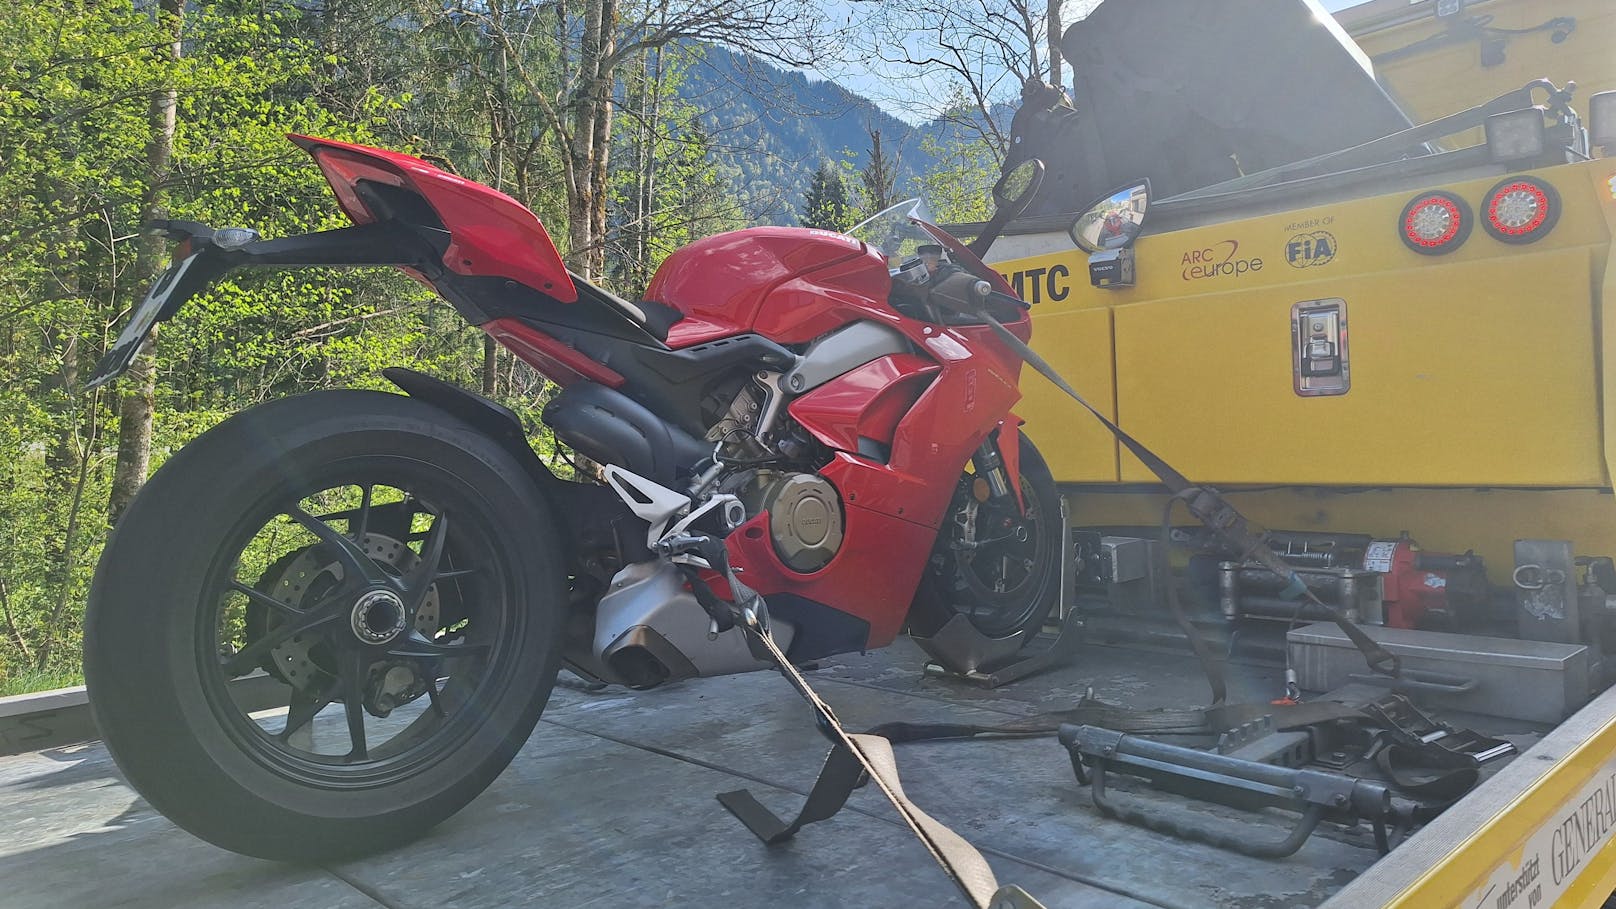 Ducati-Raser mit über 200 km/h von Polizei geblitzt